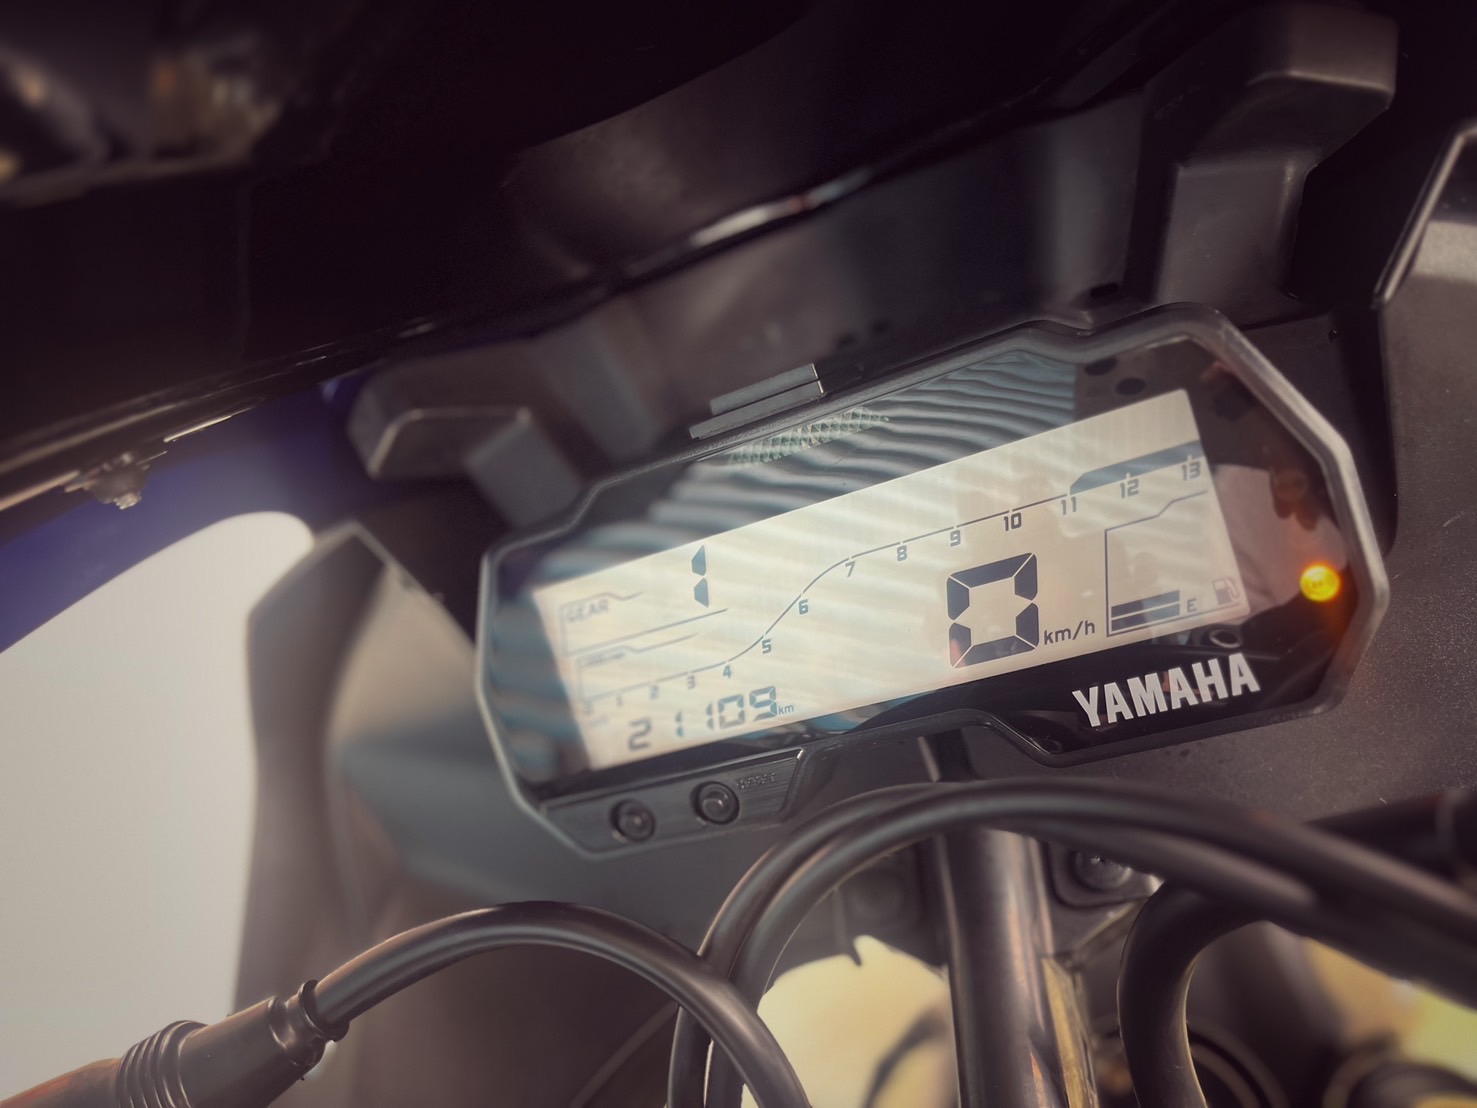 YAMAHA YZF-R15 - 中古/二手車出售中 LeoVince排氣管 行車記錄器 WH!Z腳踏 精品改裝 小資族二手重機買賣 | 小資族二手重機買賣